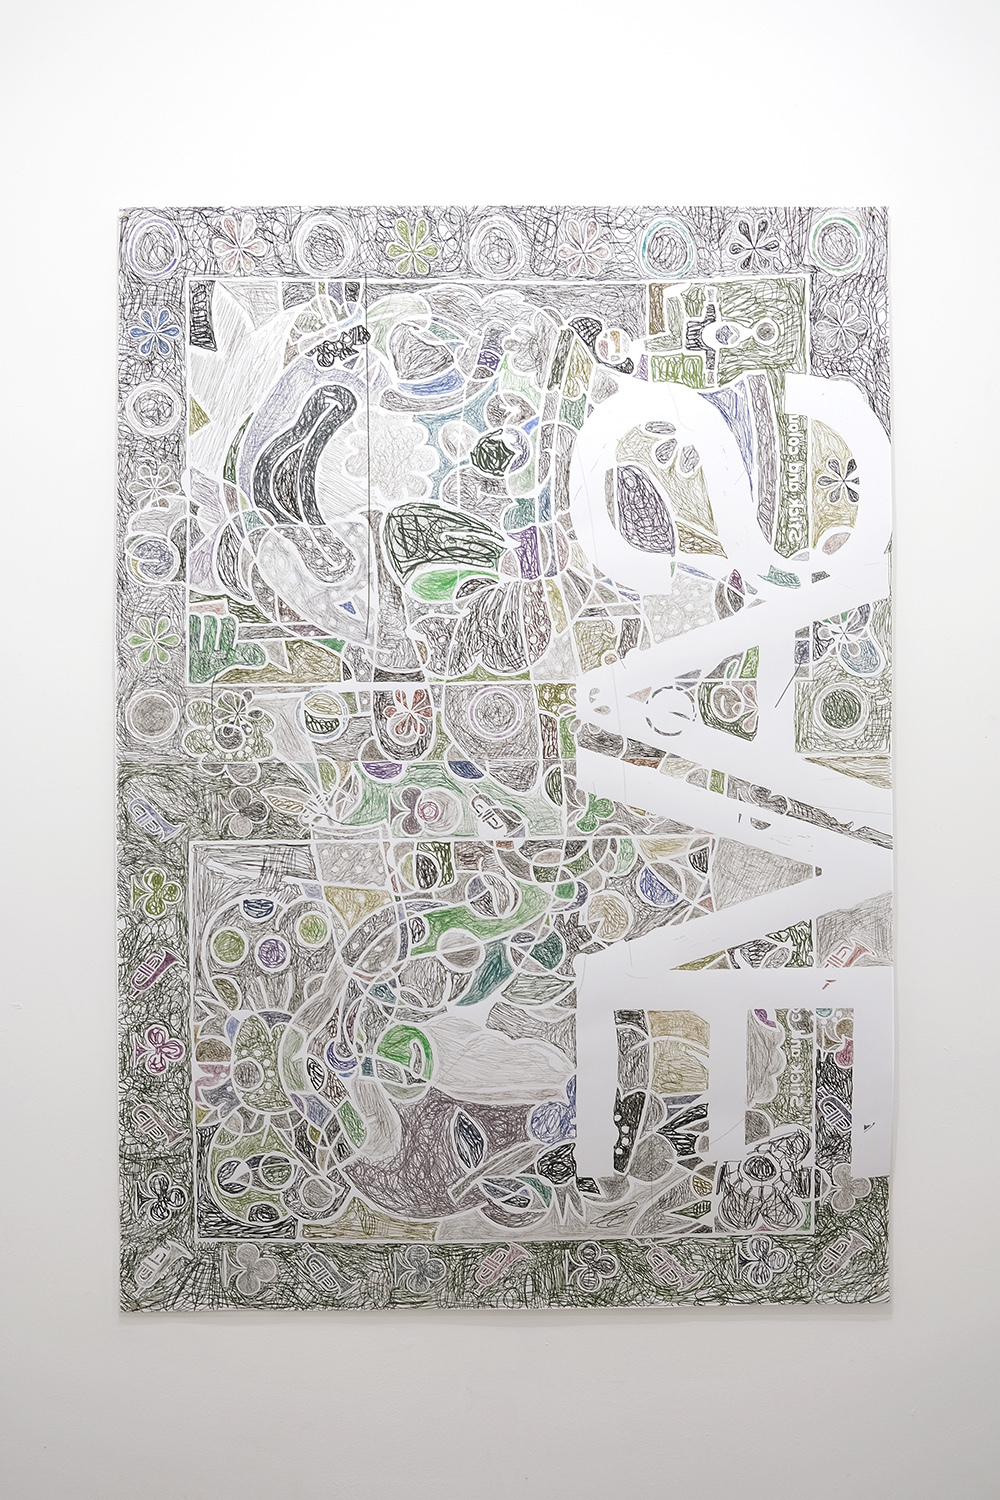 Sophie Serber, save, 2021, inkjet print, 84 x 119 cm, 1